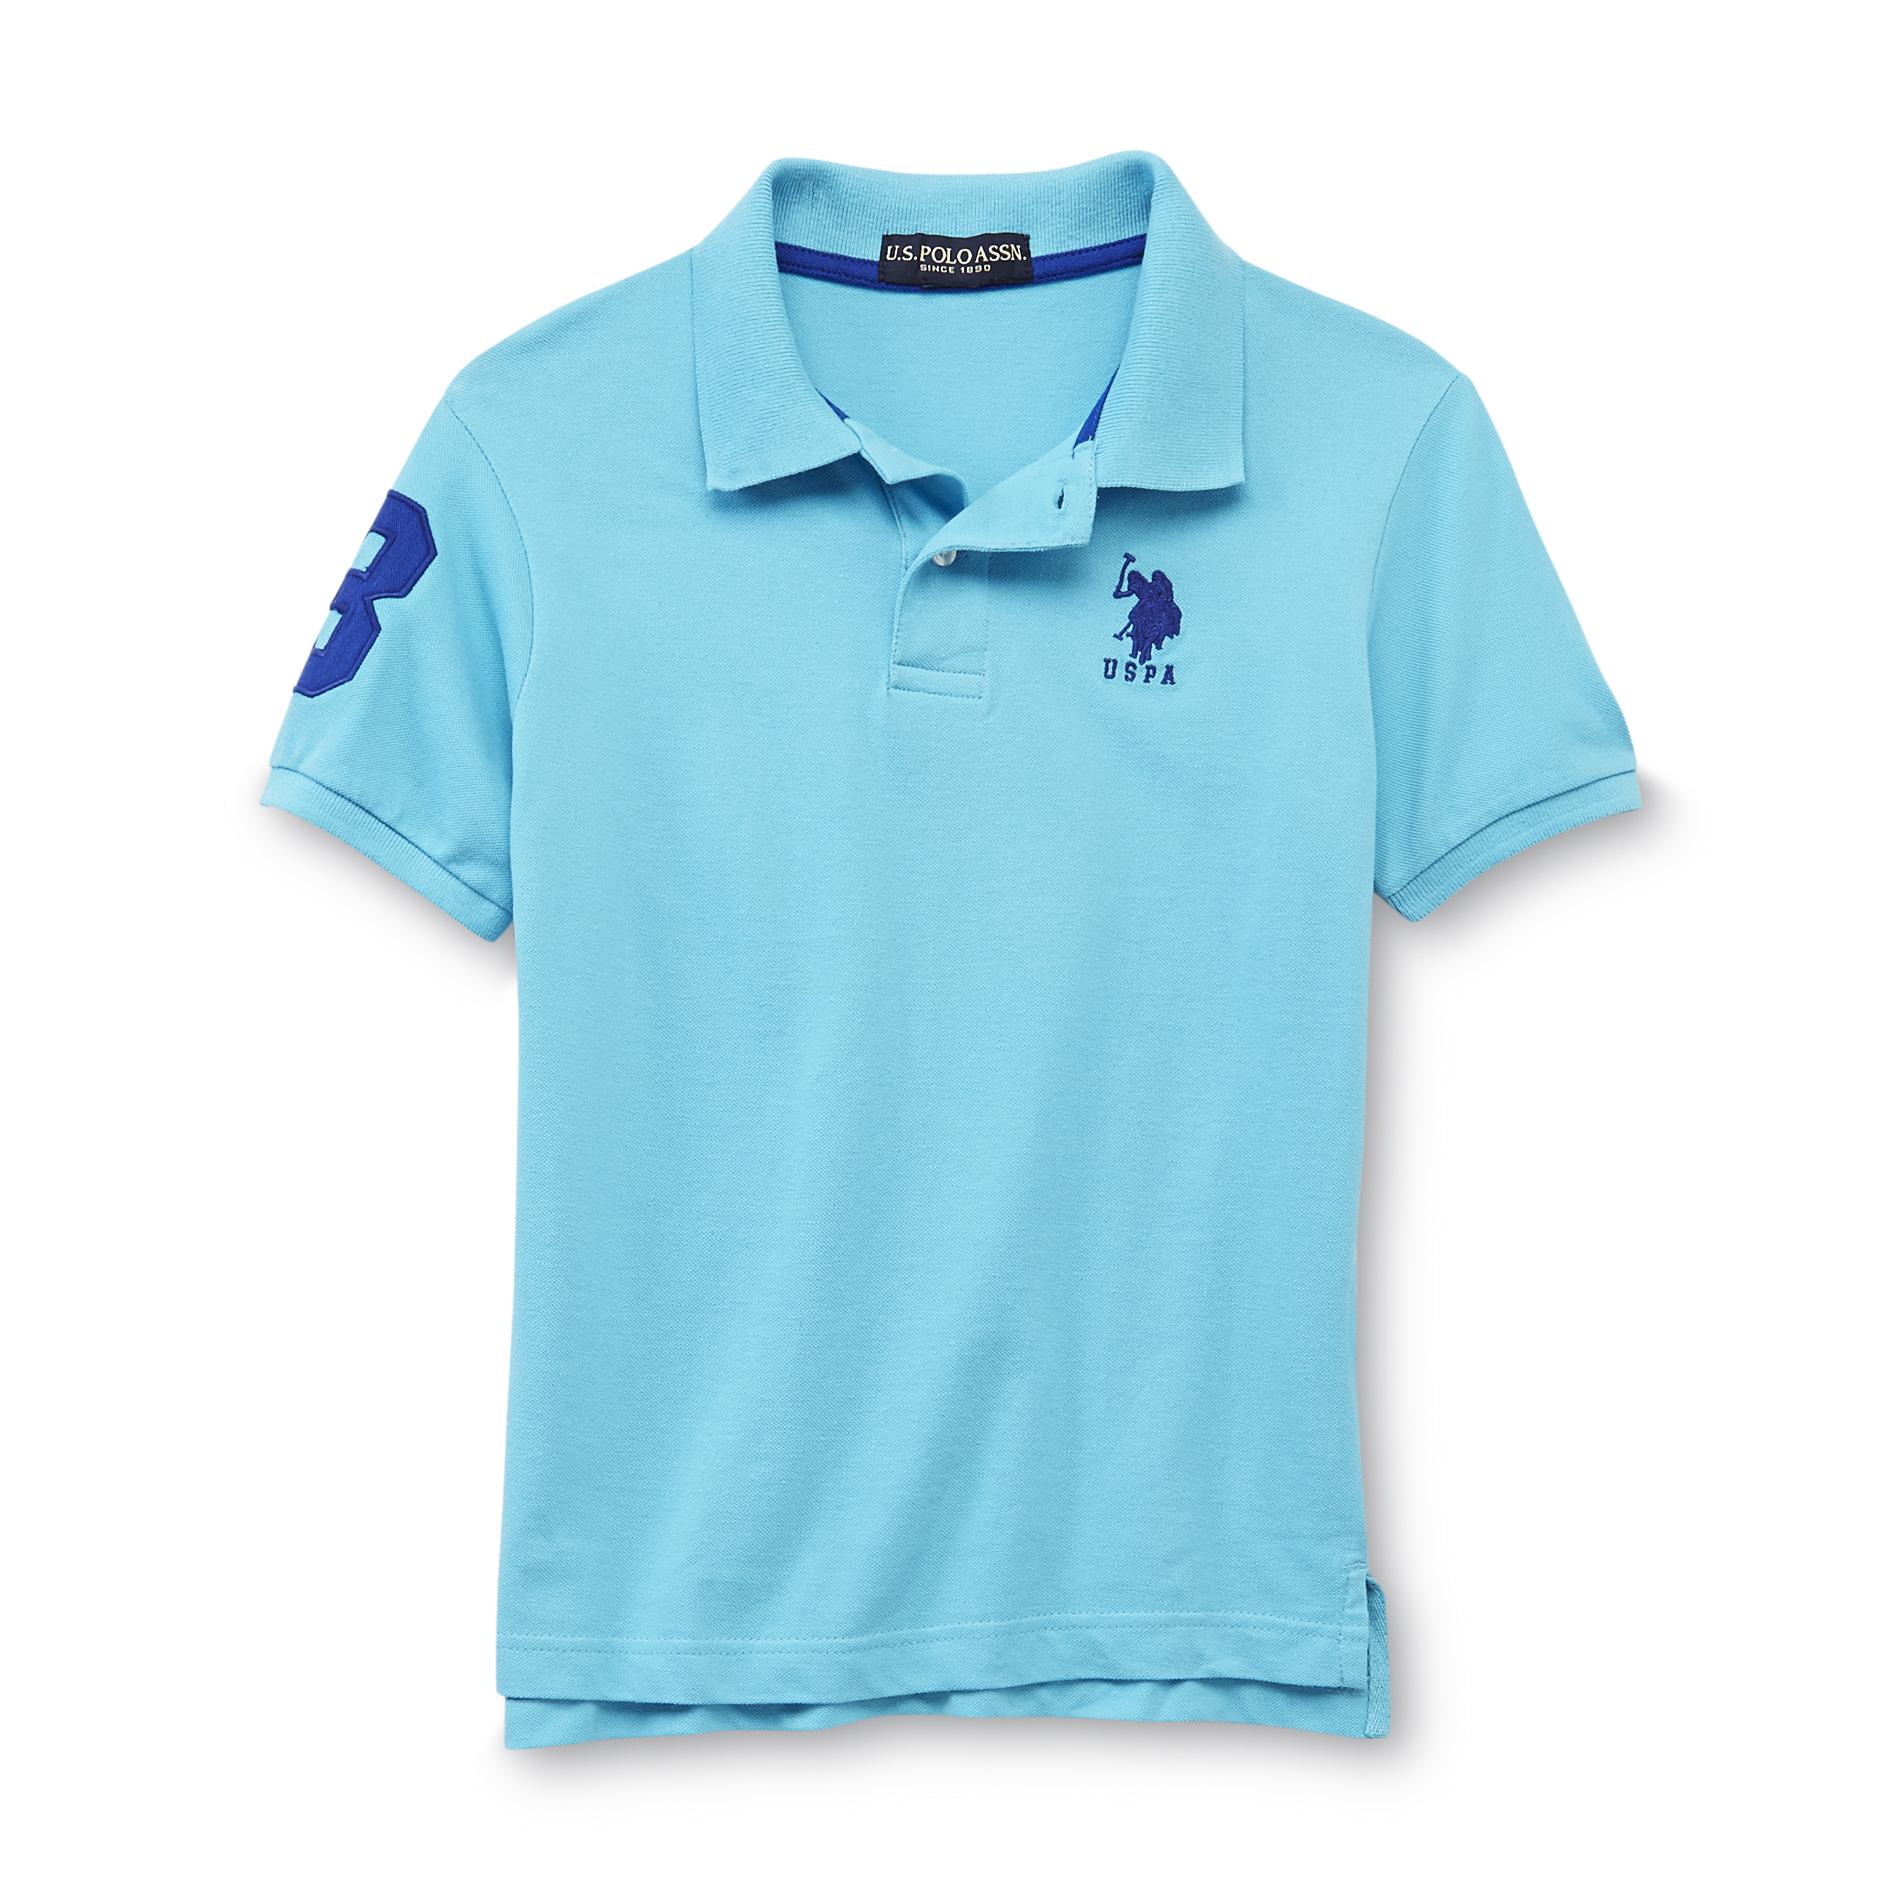 U.S. Polo Assn. Boy's Polo Shirt - Numeral